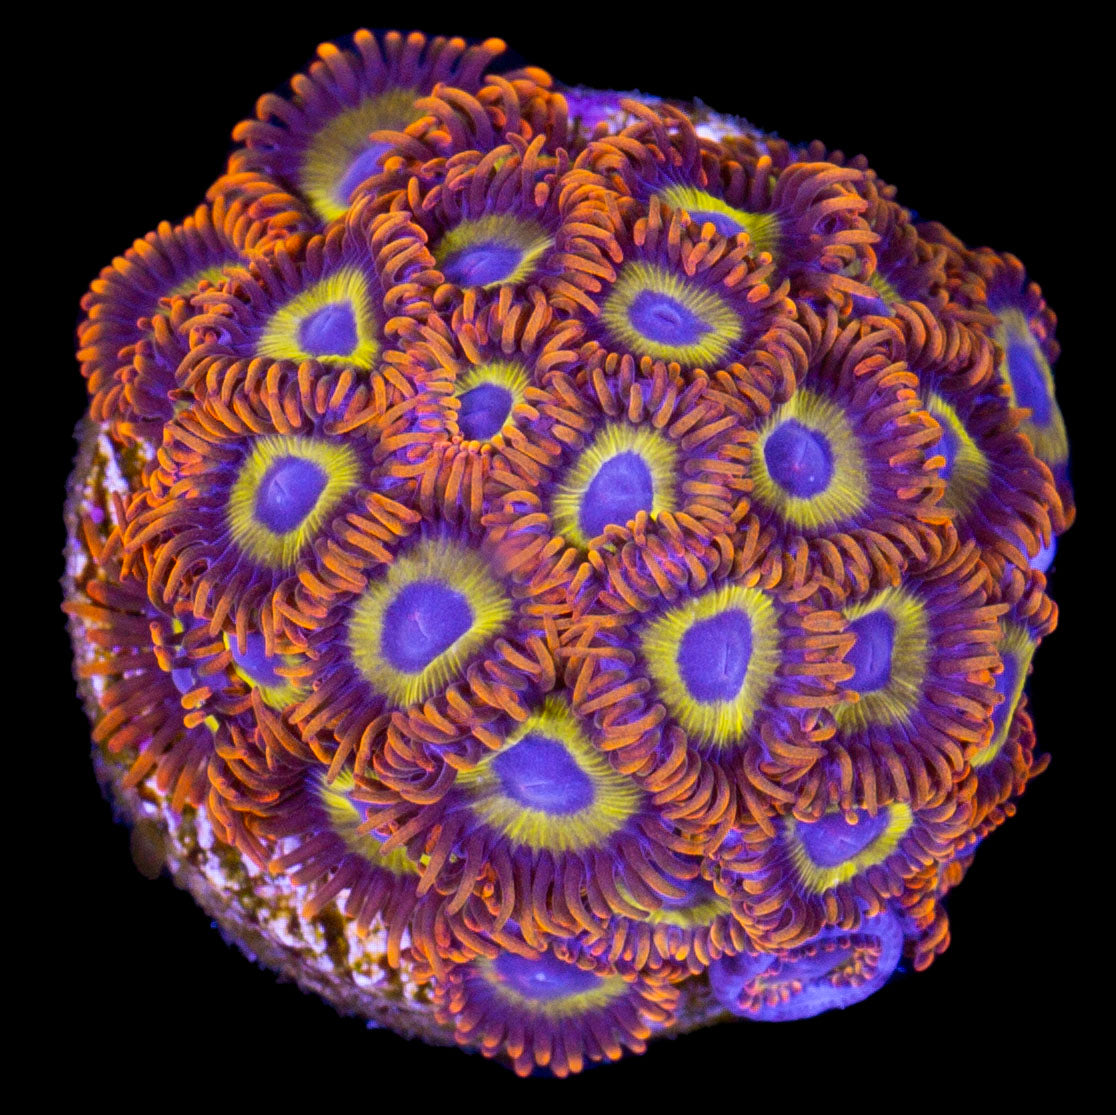 Fruit Loop Zoanthid coral